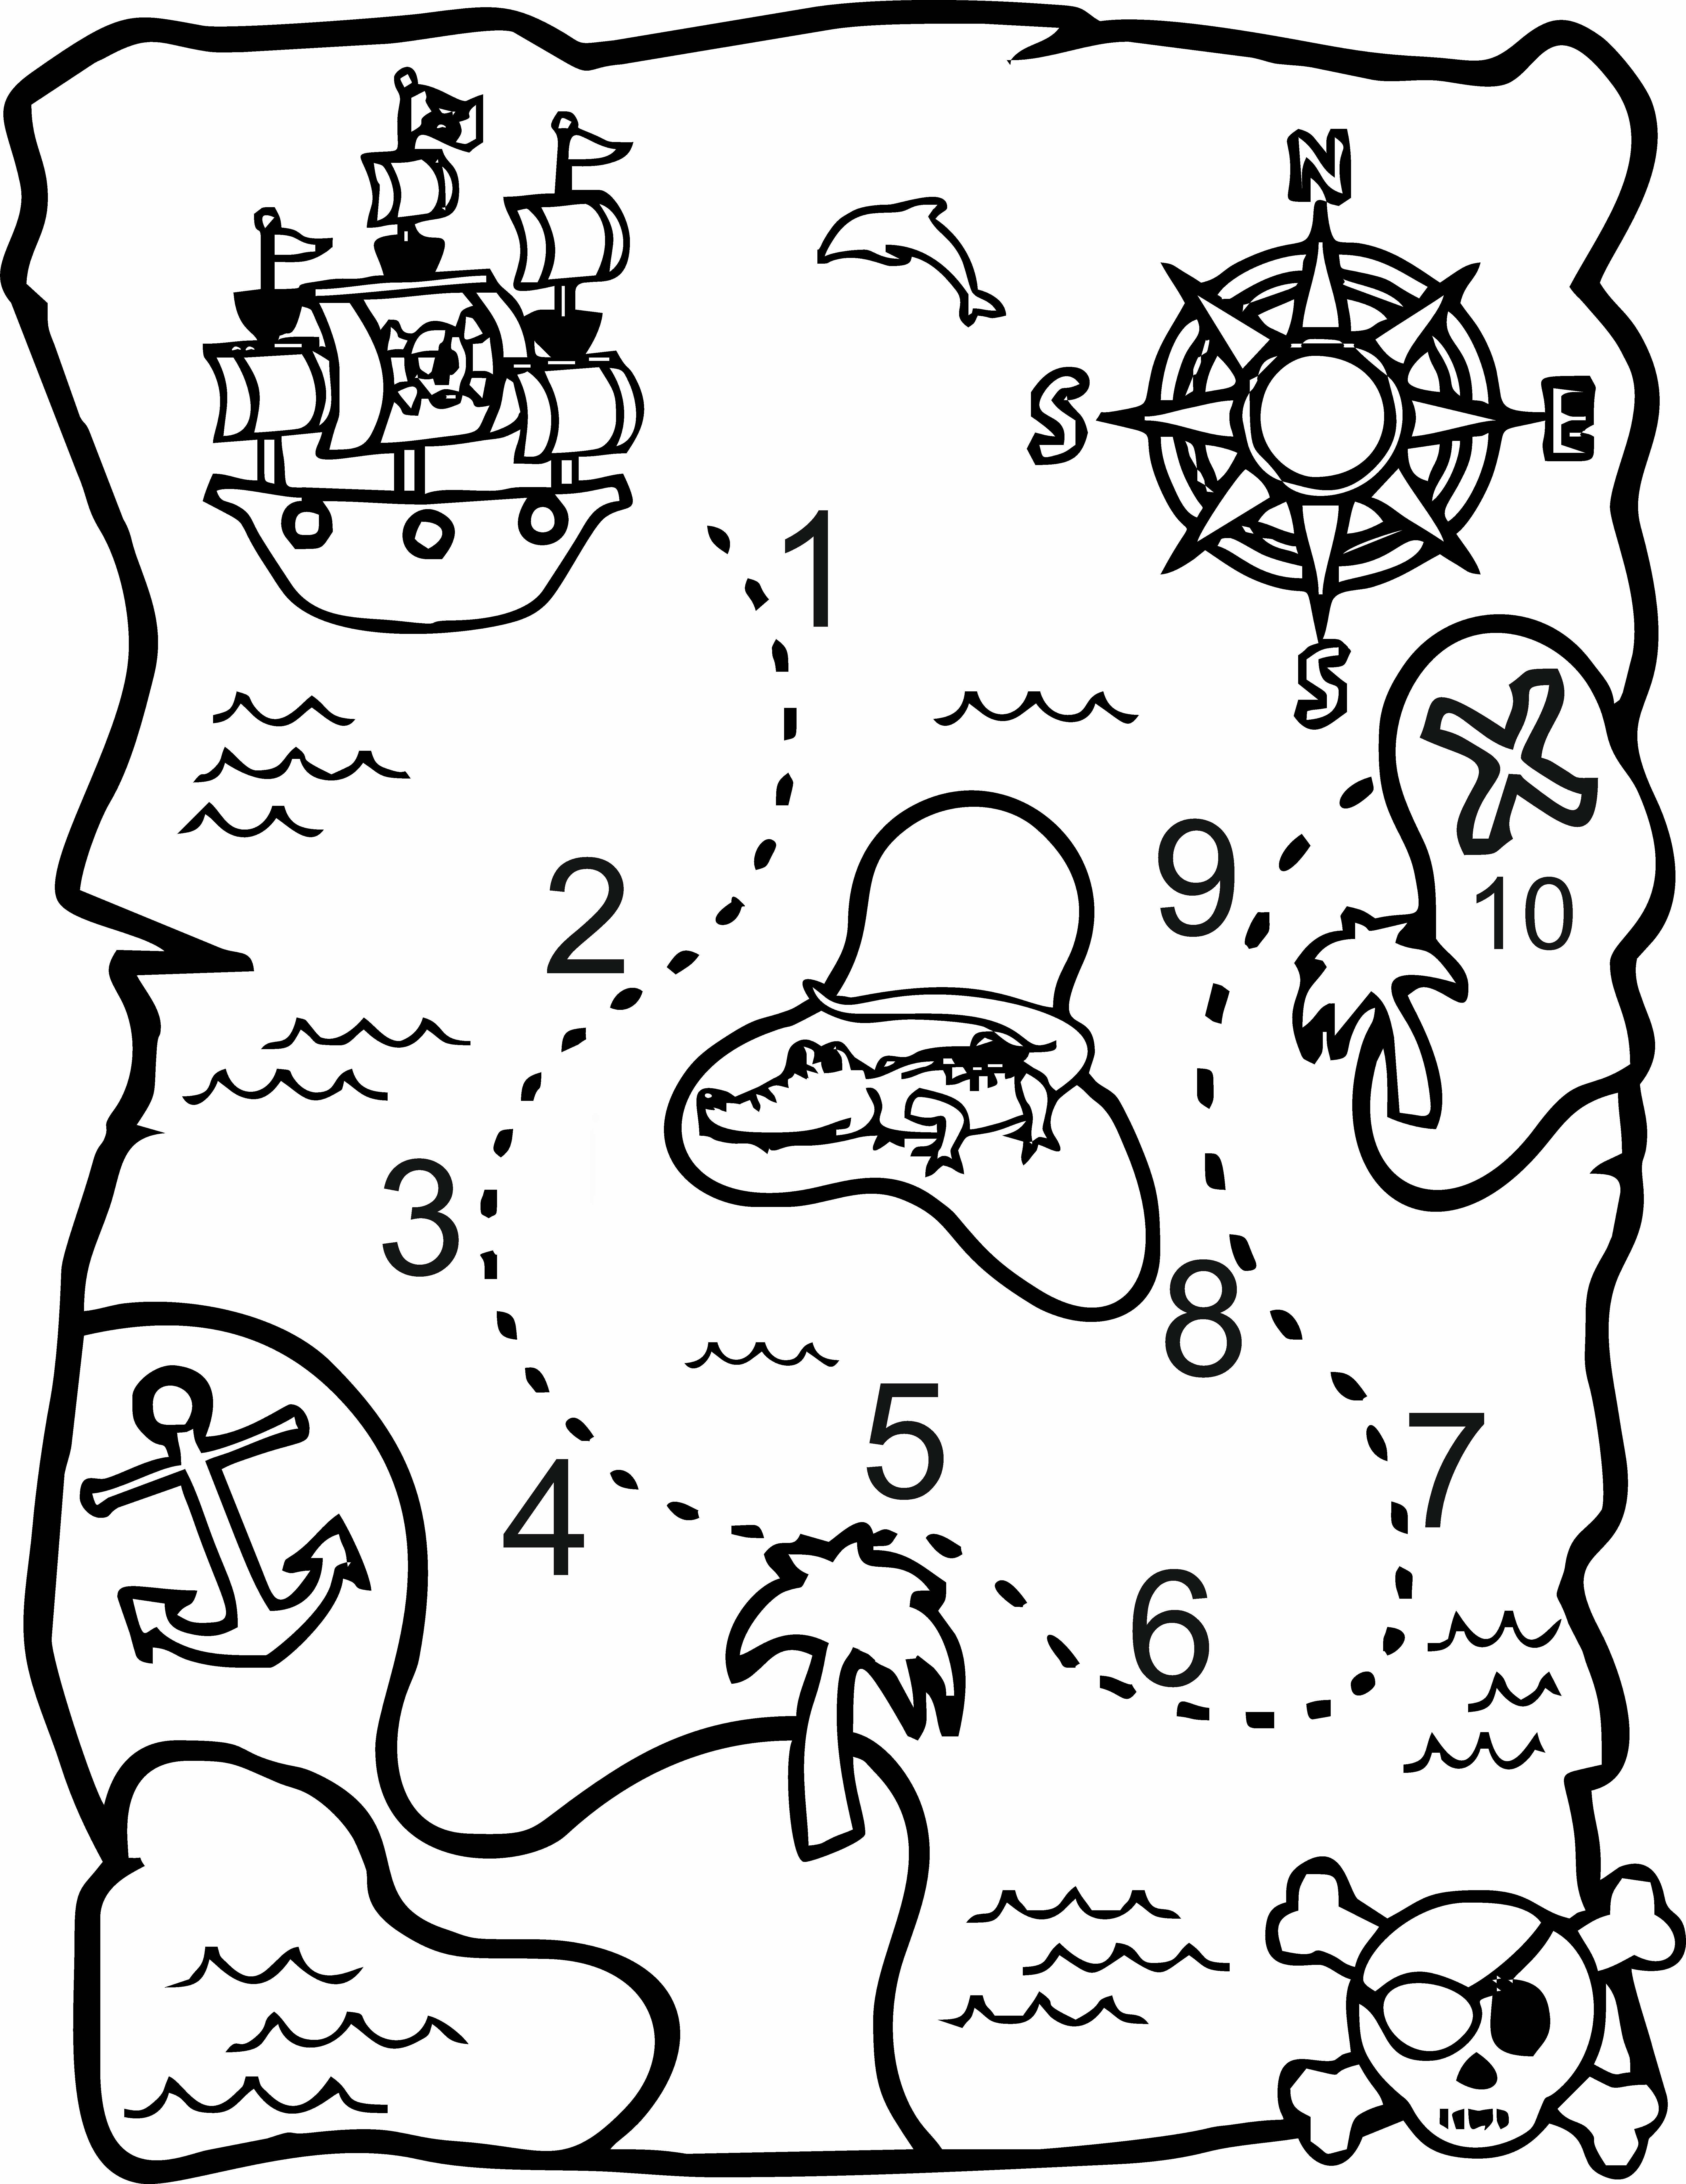 Карта для раскрашивания. Остров сокровищ карта задания пирата. Пиратский квест карта сокровищ для детей. Раскраска карта сокровищ для детей. Карта пиратов для детей.